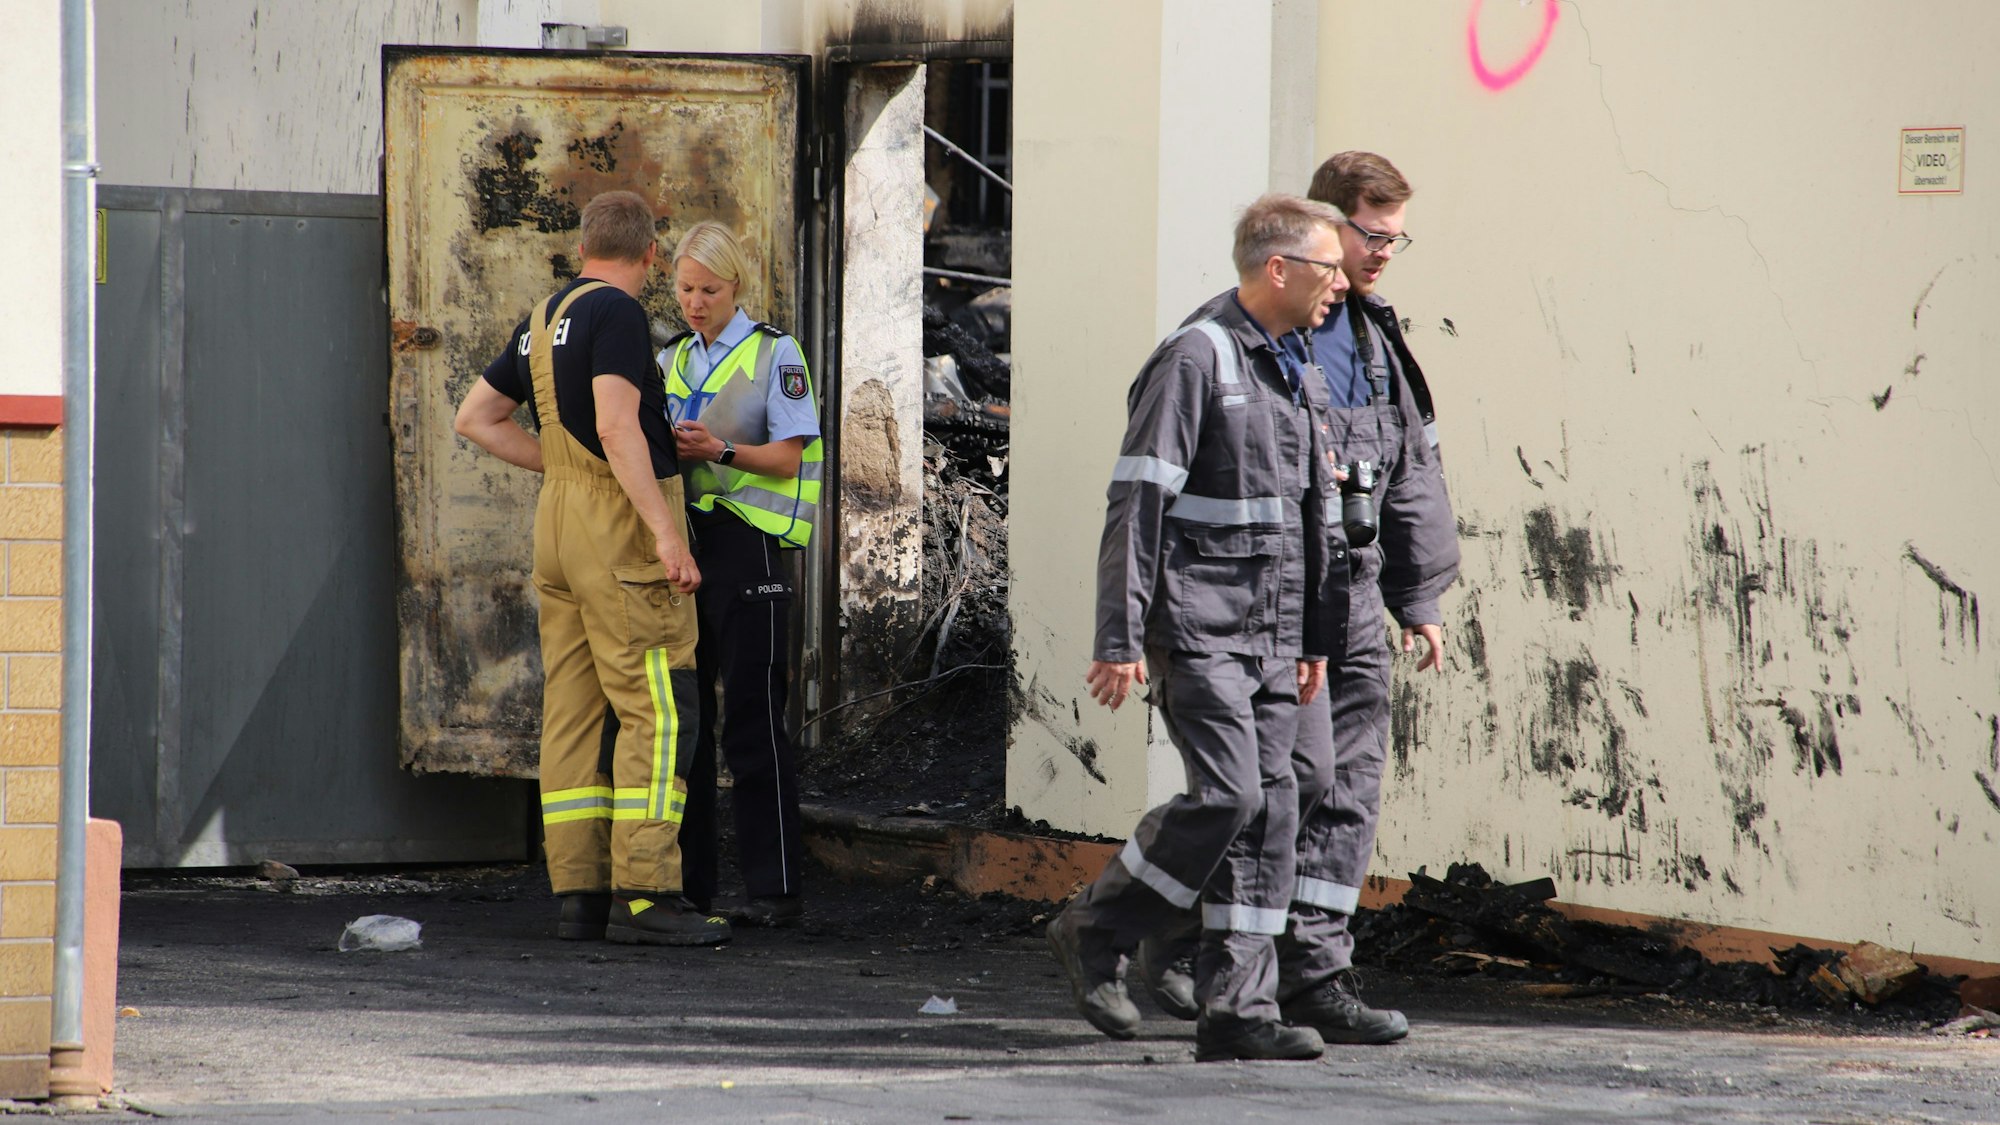 Eine Polizistin und drei Männer in Overalls stehen vor einer verrußten Häuserwand, durch eine Tür sind verkohlte Trümmer zu erkennen.